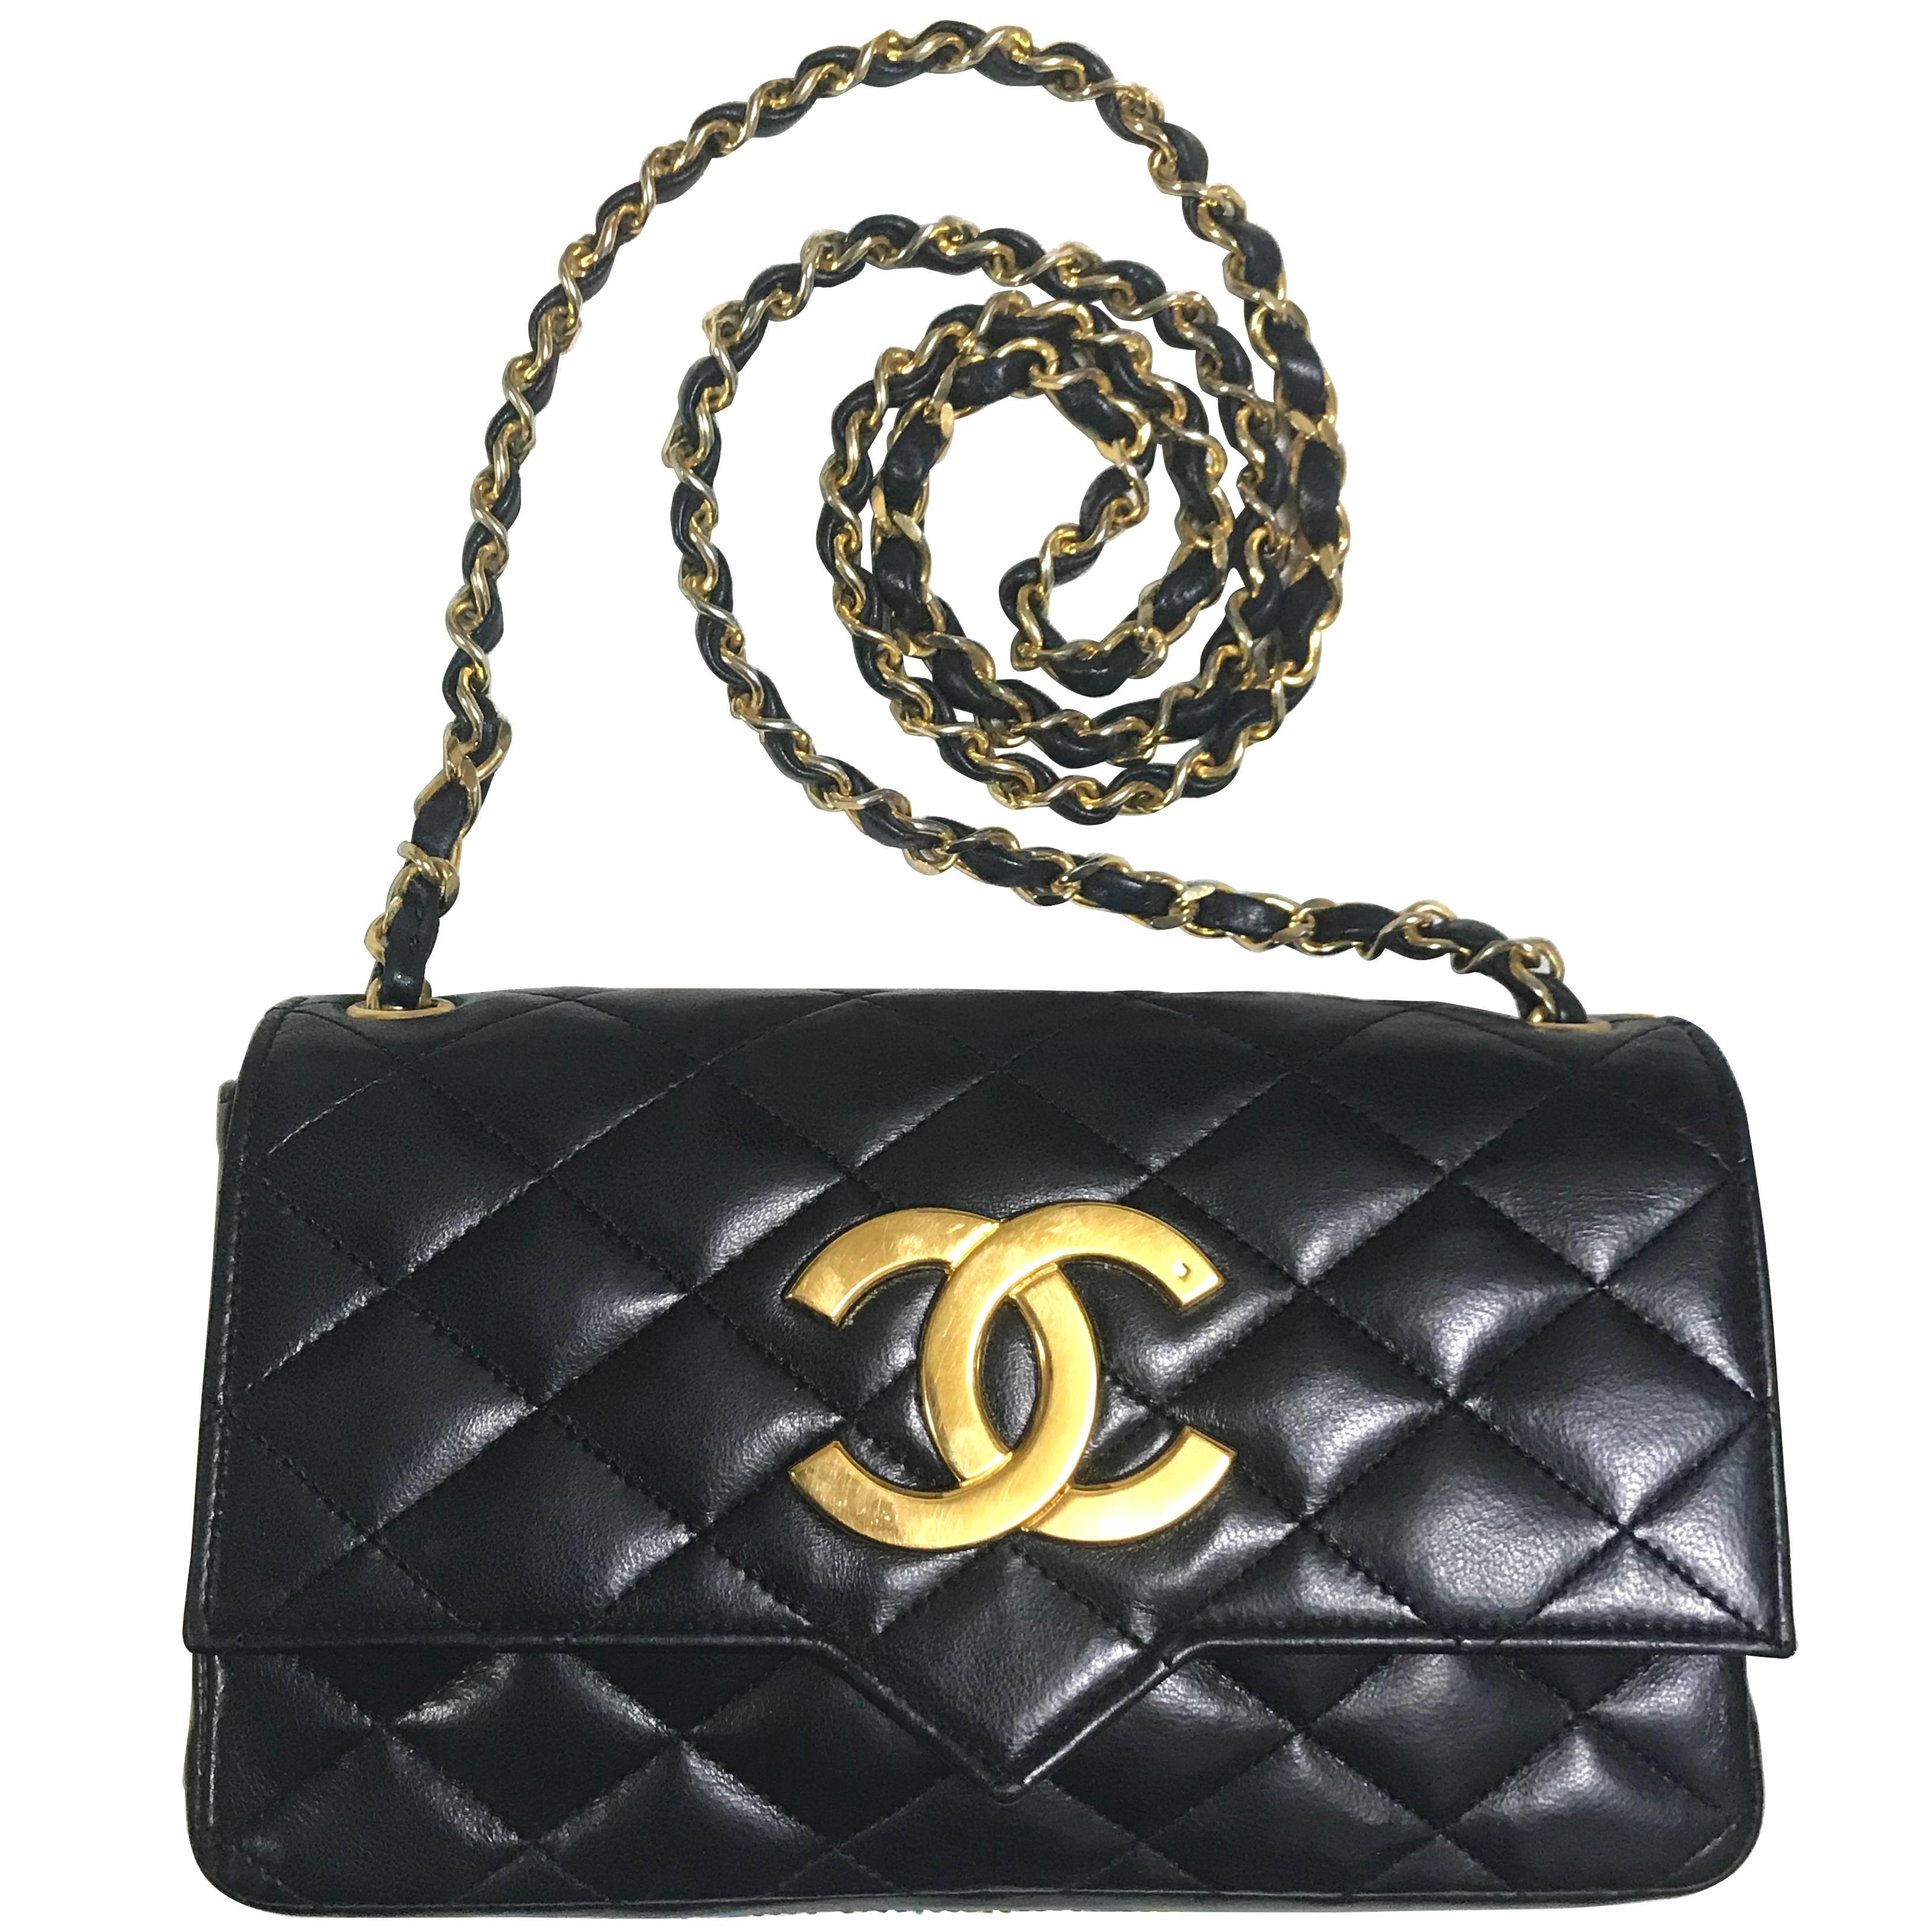 vintage CHANEL black lambskin shoulder bag with golden large CC logo motif.